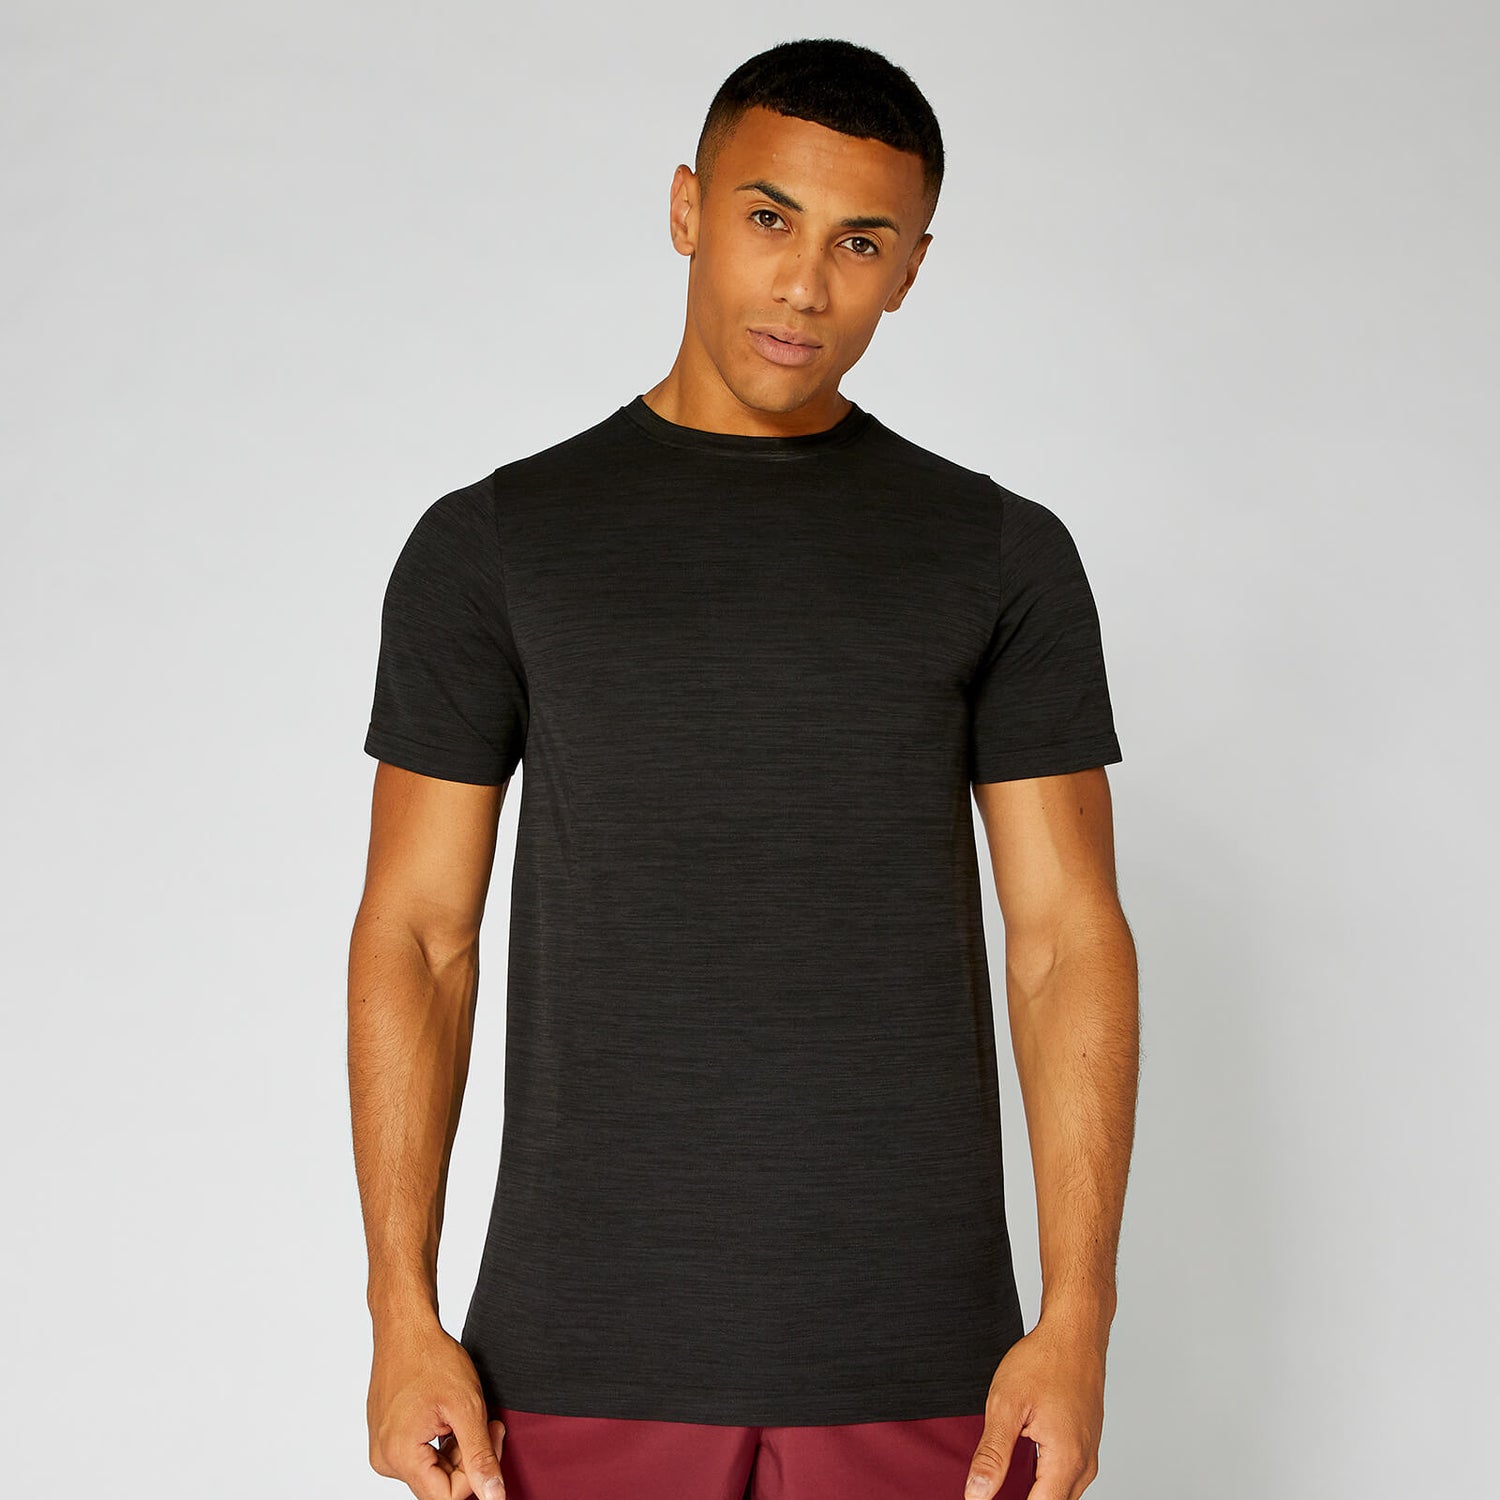 Buy Men's Lightweight Seamless T-Shirt, Black Marl